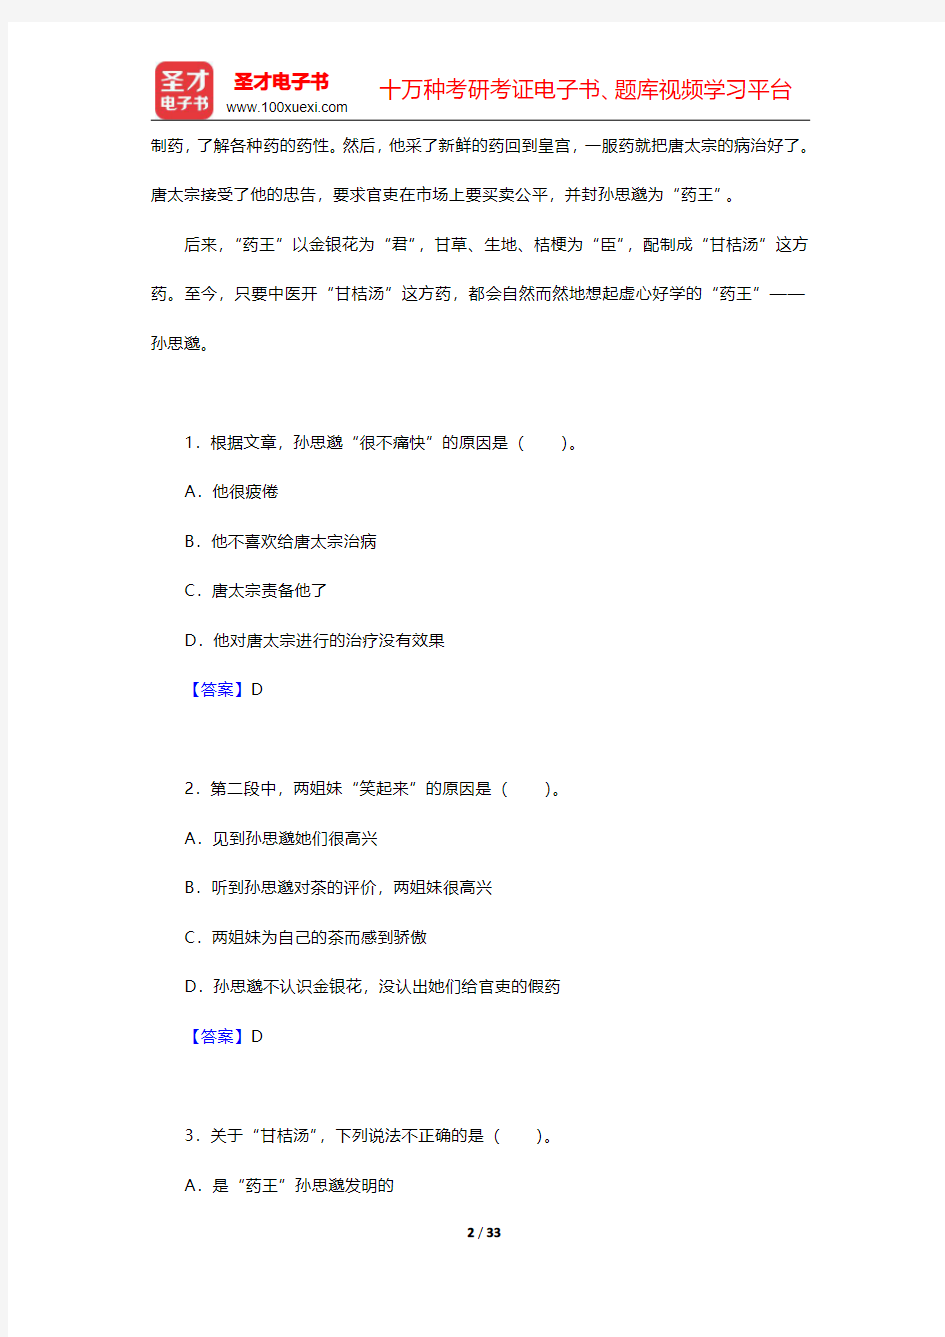 2020年中国少数民族汉语水平等级考试MHK(二级)笔试 章节题库(阅读理解-阅读并选择正确答案 中